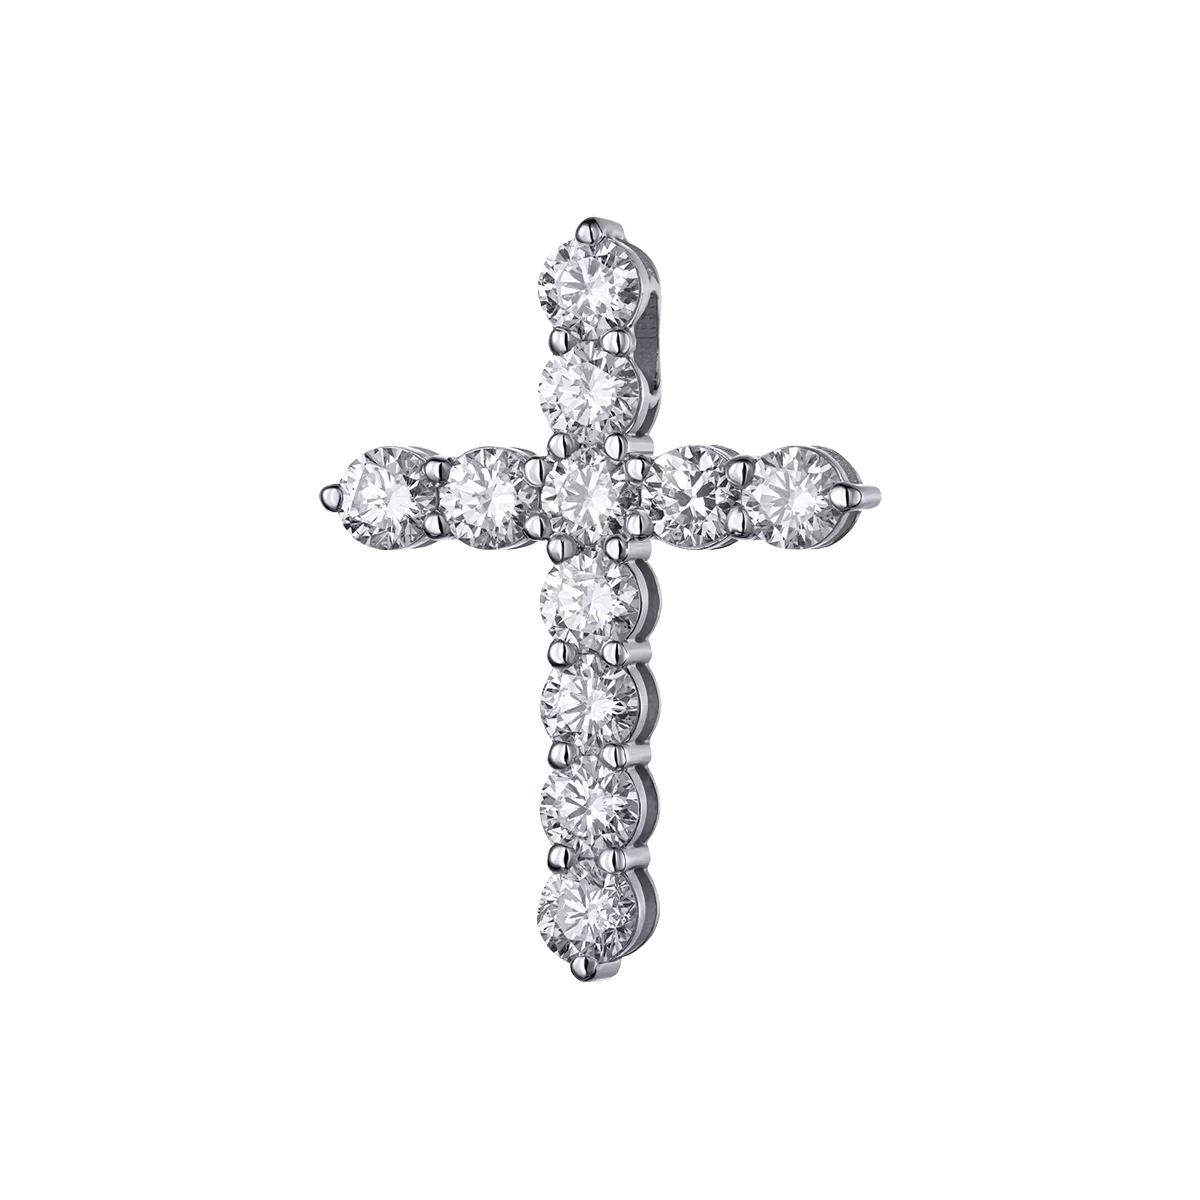 Крестик из белого золота с бриллиантами. Артикул П499б: цена, отзывы, фото – купить в интернет-магазине AURUM